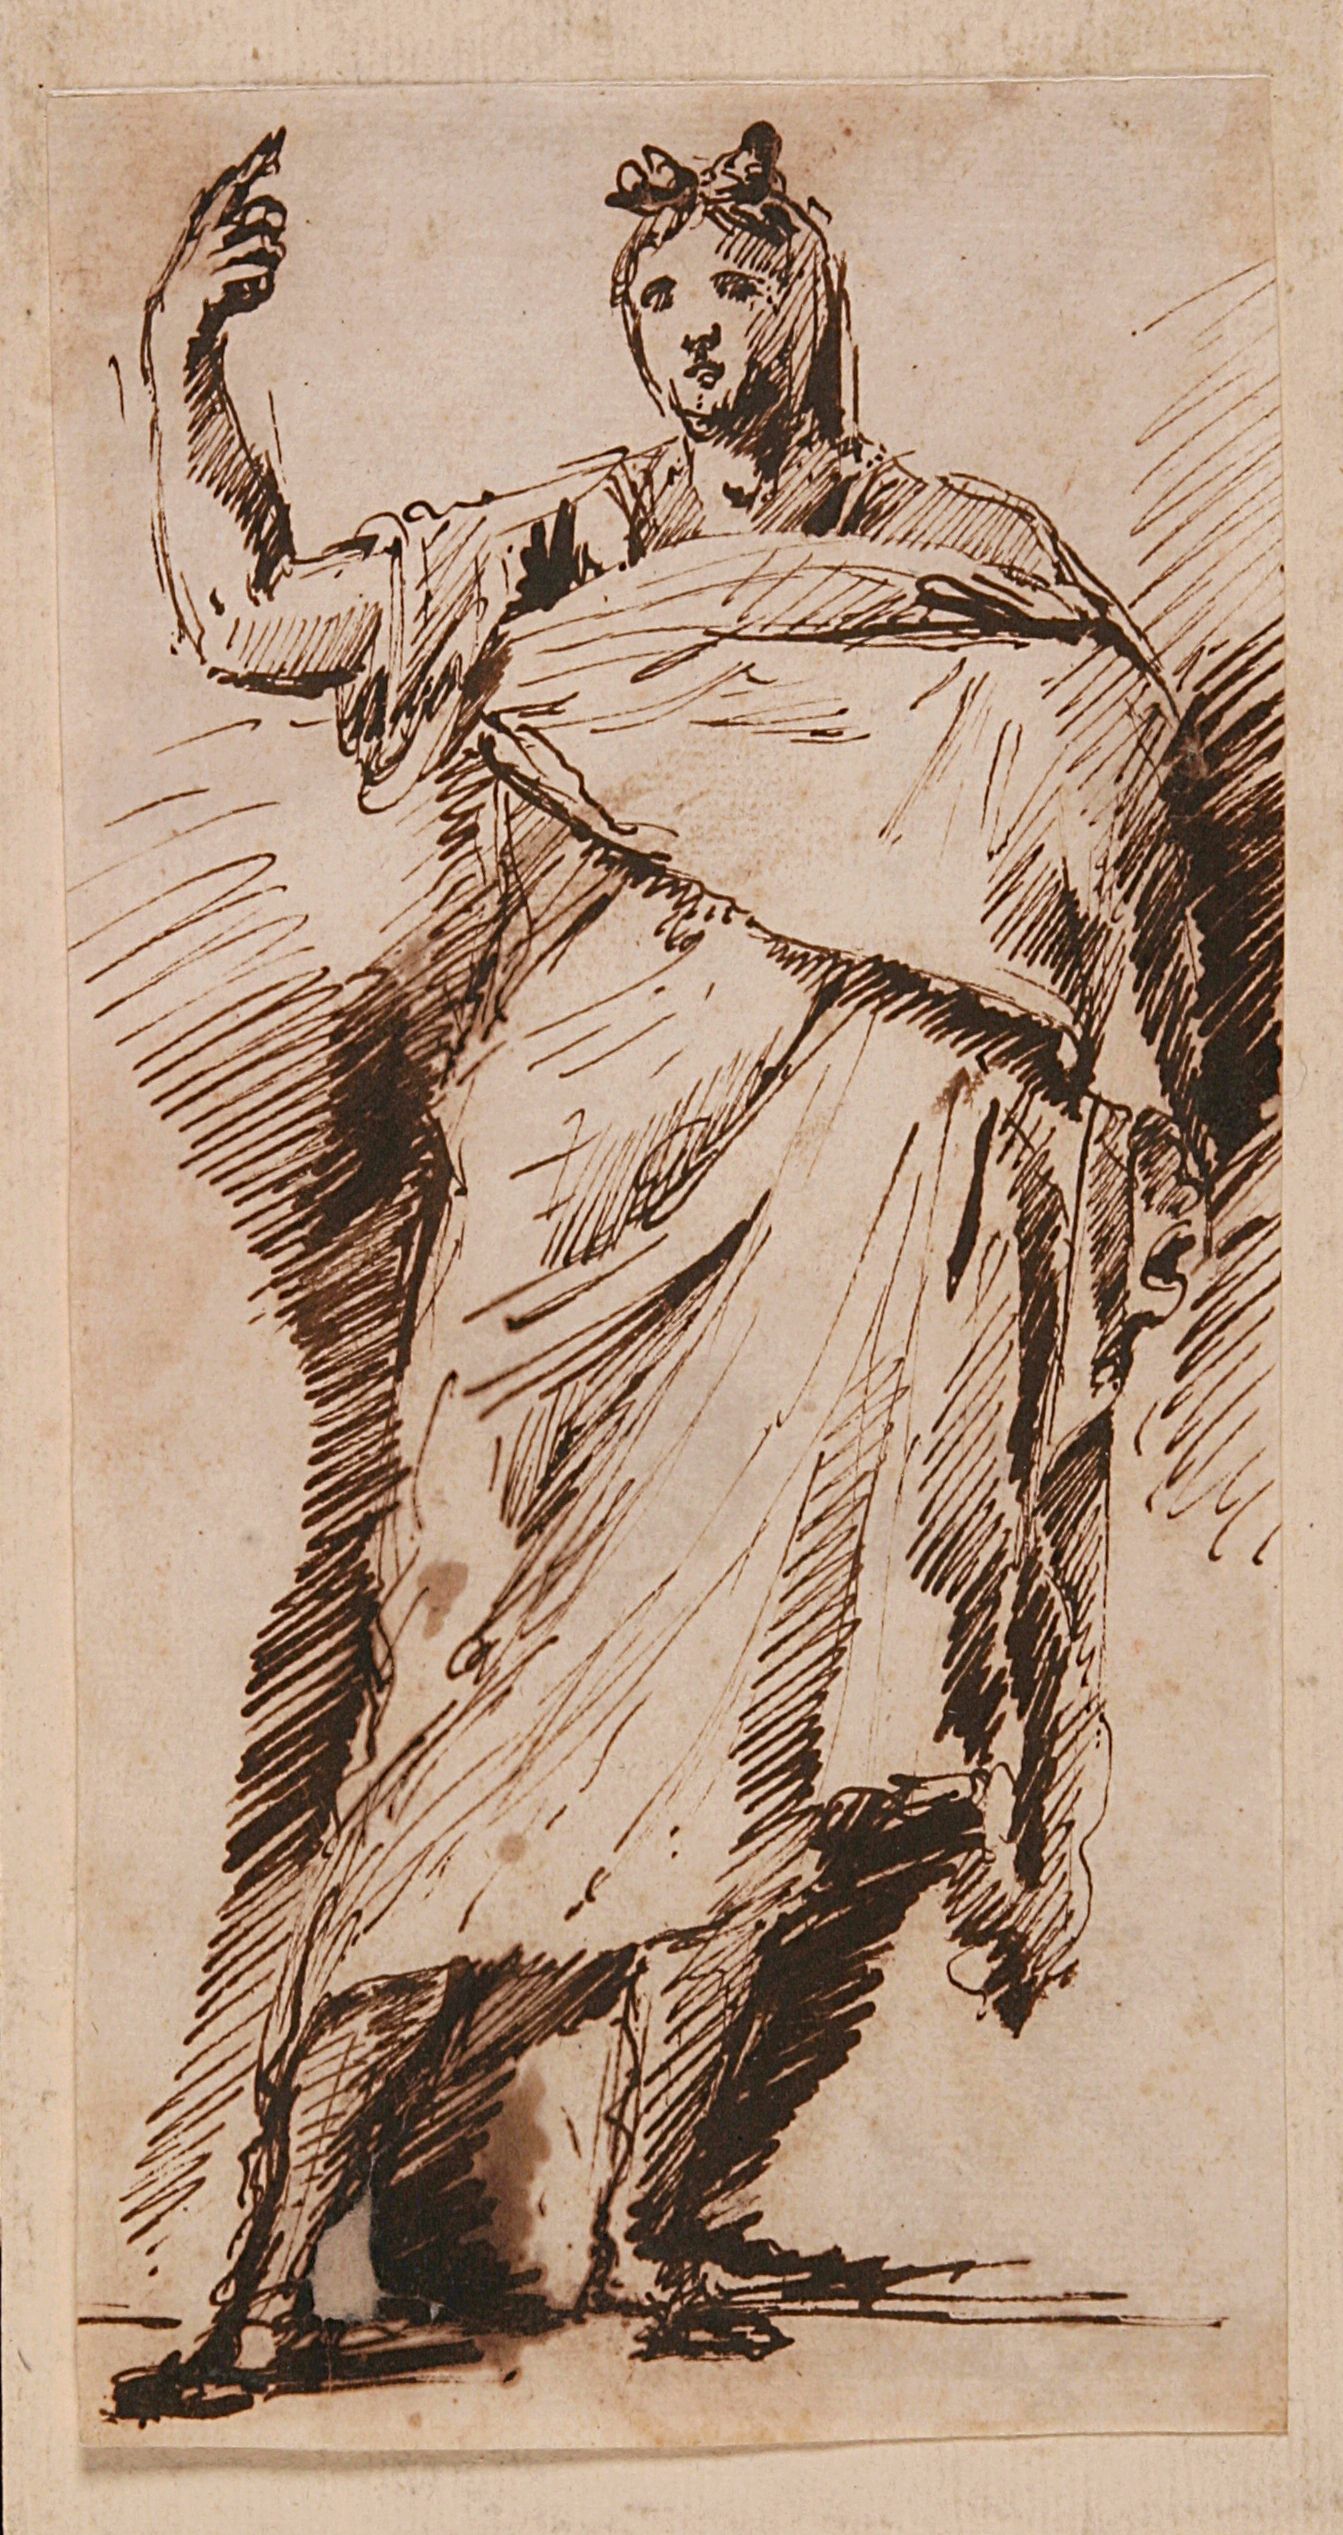 Piranesi-Zeichnung einer stehenden Figur.